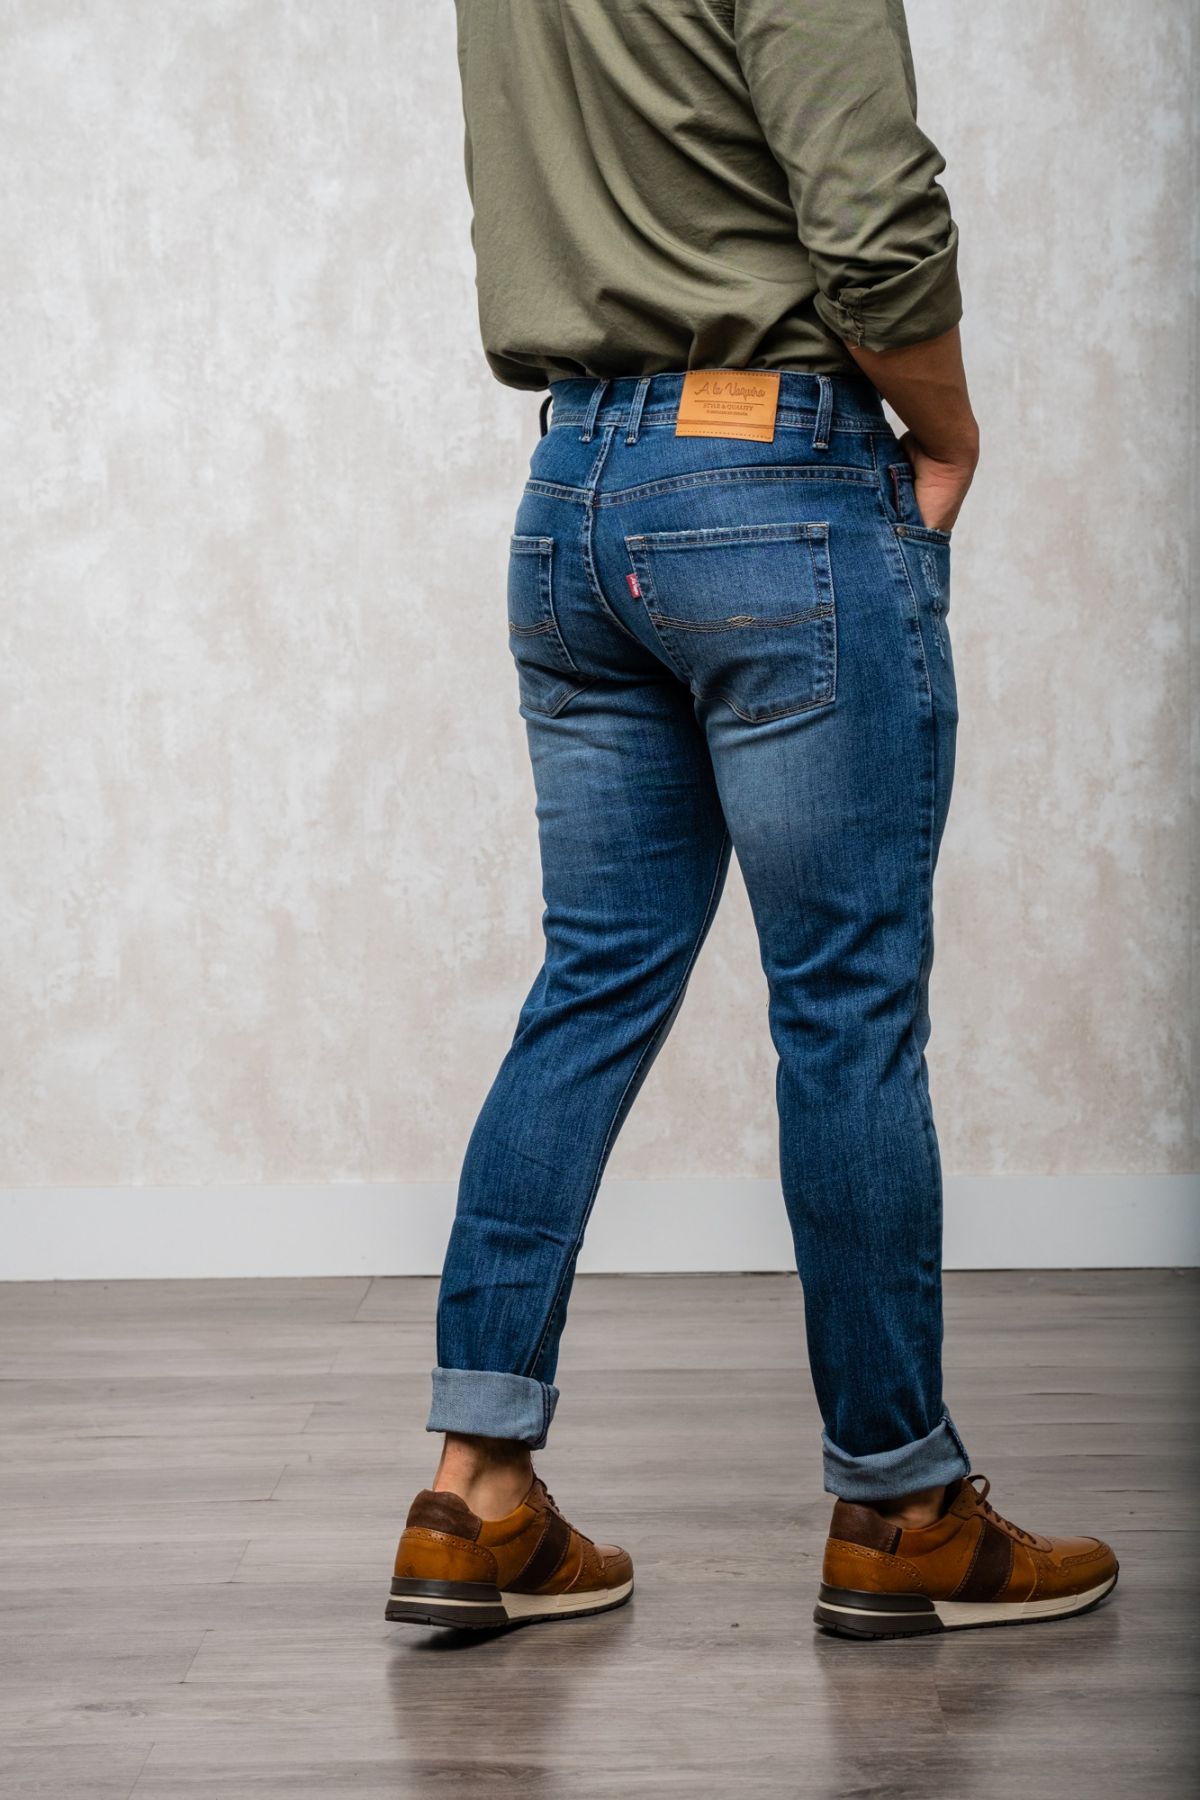 Un pantalón vaquero de corte skinny, color azul lavado, hecho en España con la marca "Moda a la Vaquera" es un pantalón corte ajustado y una tonalidad de azul lavado. La marca "Moda a la Vaquera" se caracteriza por su estilo western y su enfoque en la cal